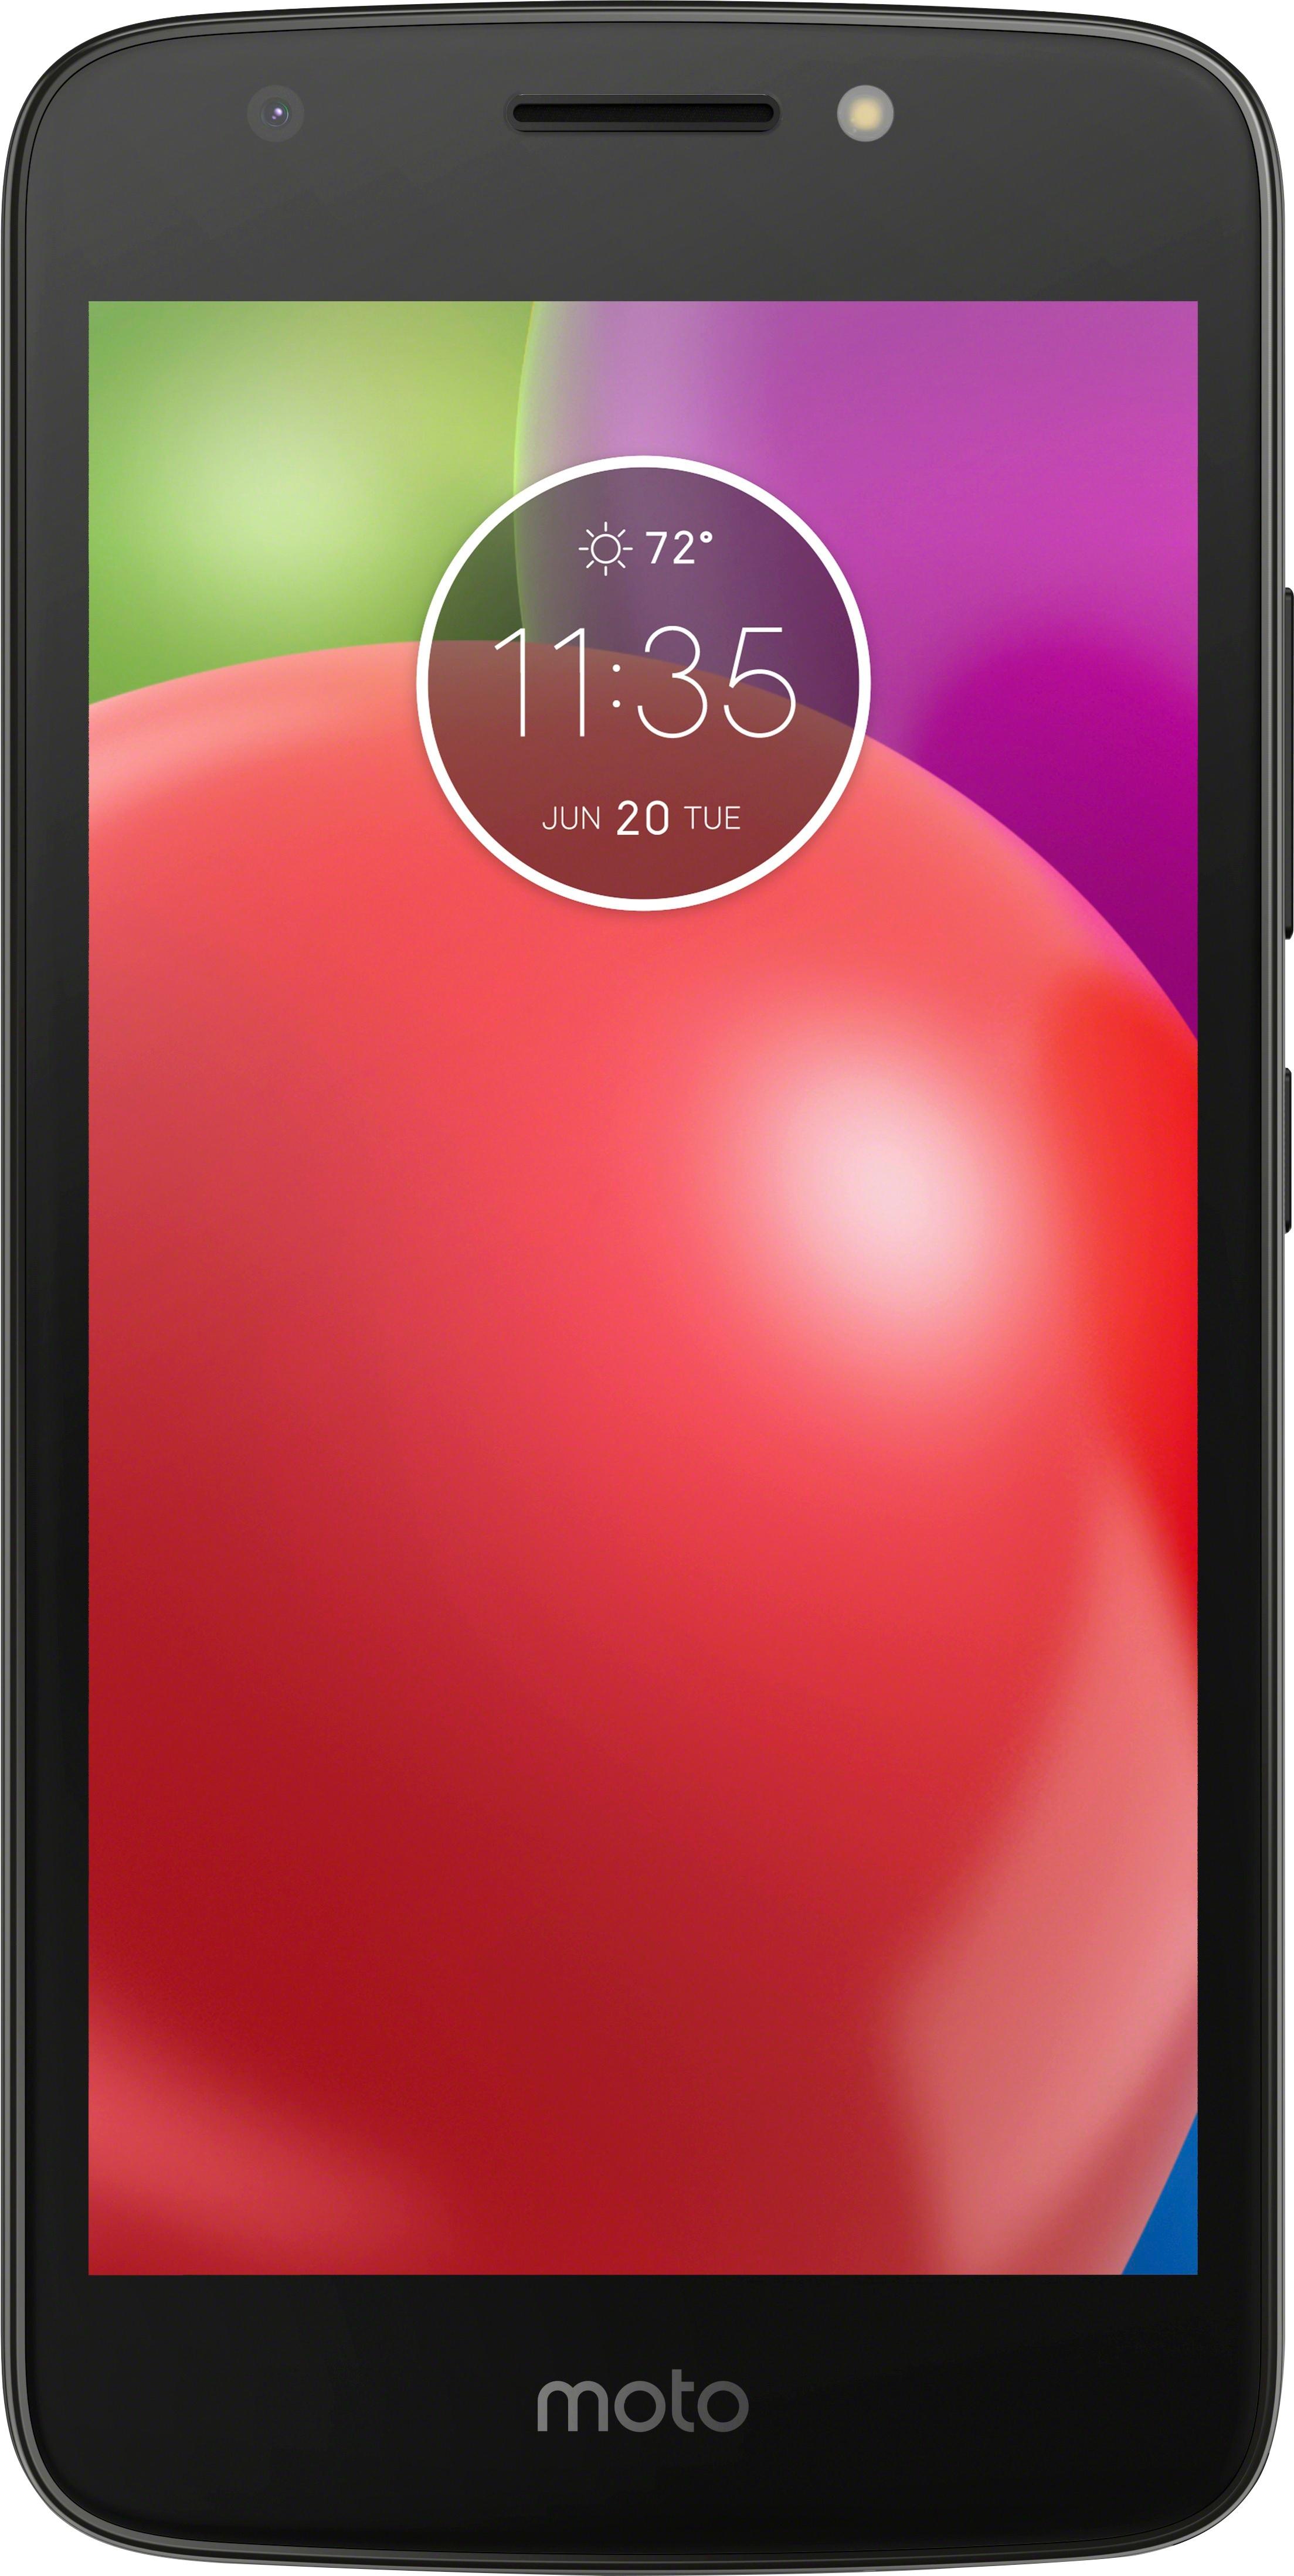 Motorola E4 Plus - Used - Verizon - Black